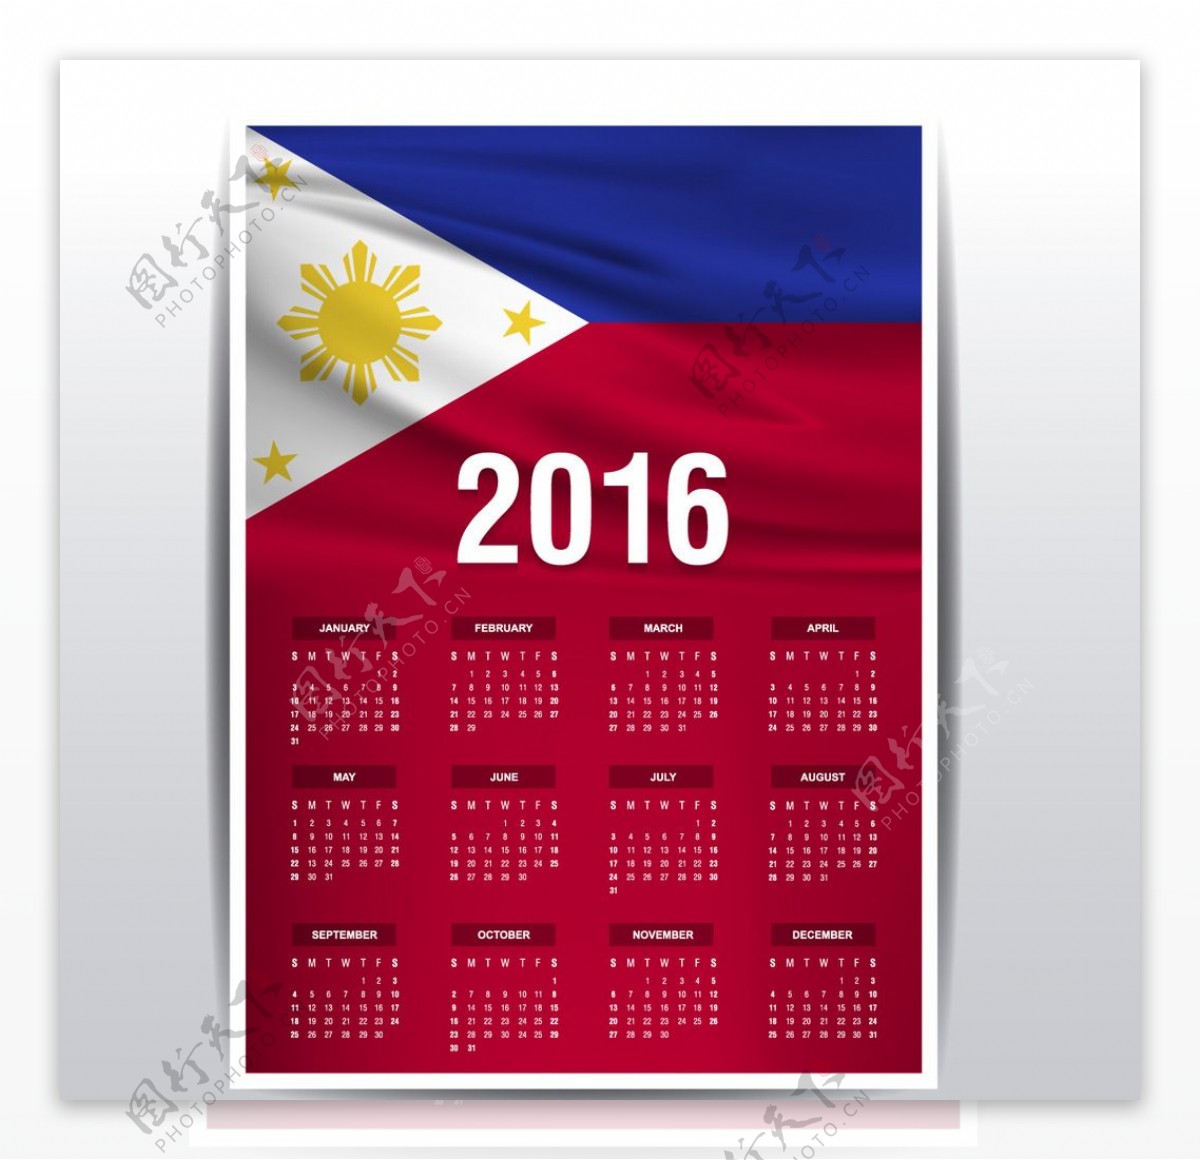 菲律宾国旗日历